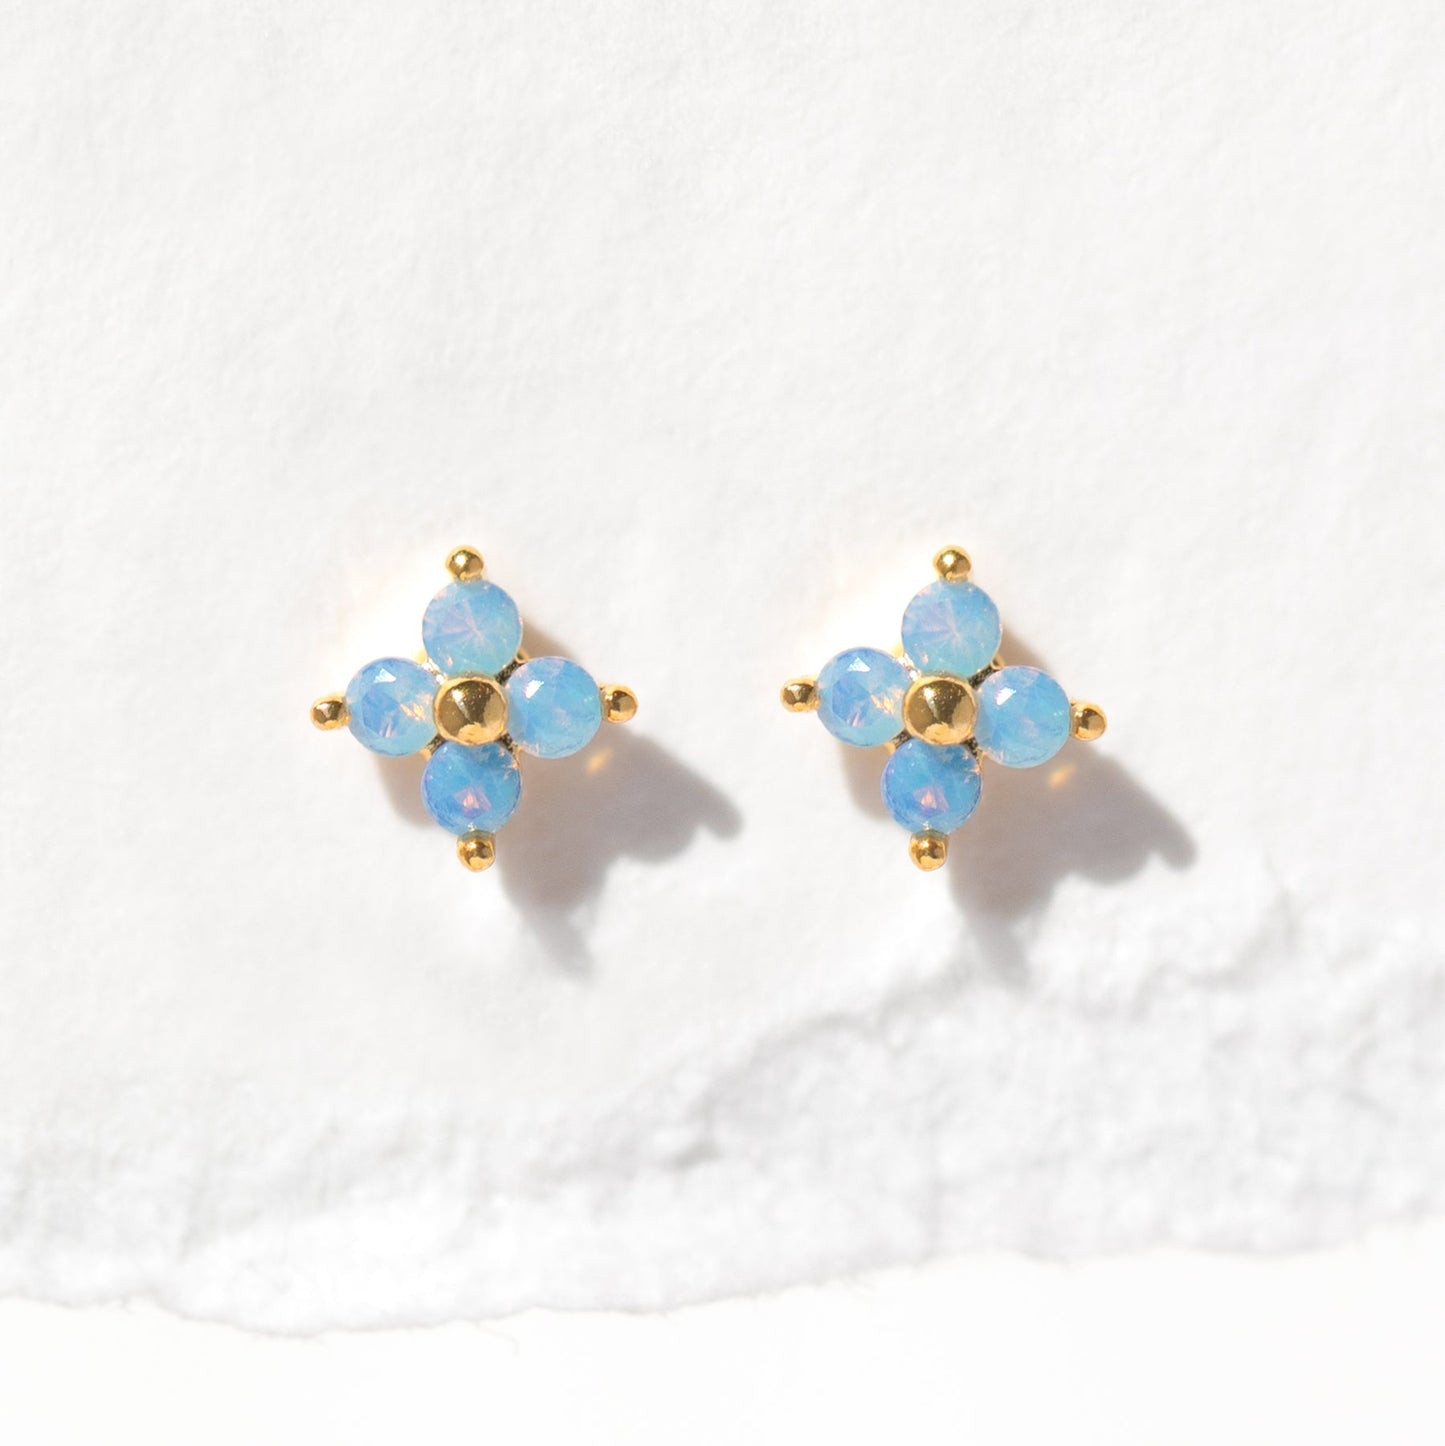 Blue Blossom  Earrings Set